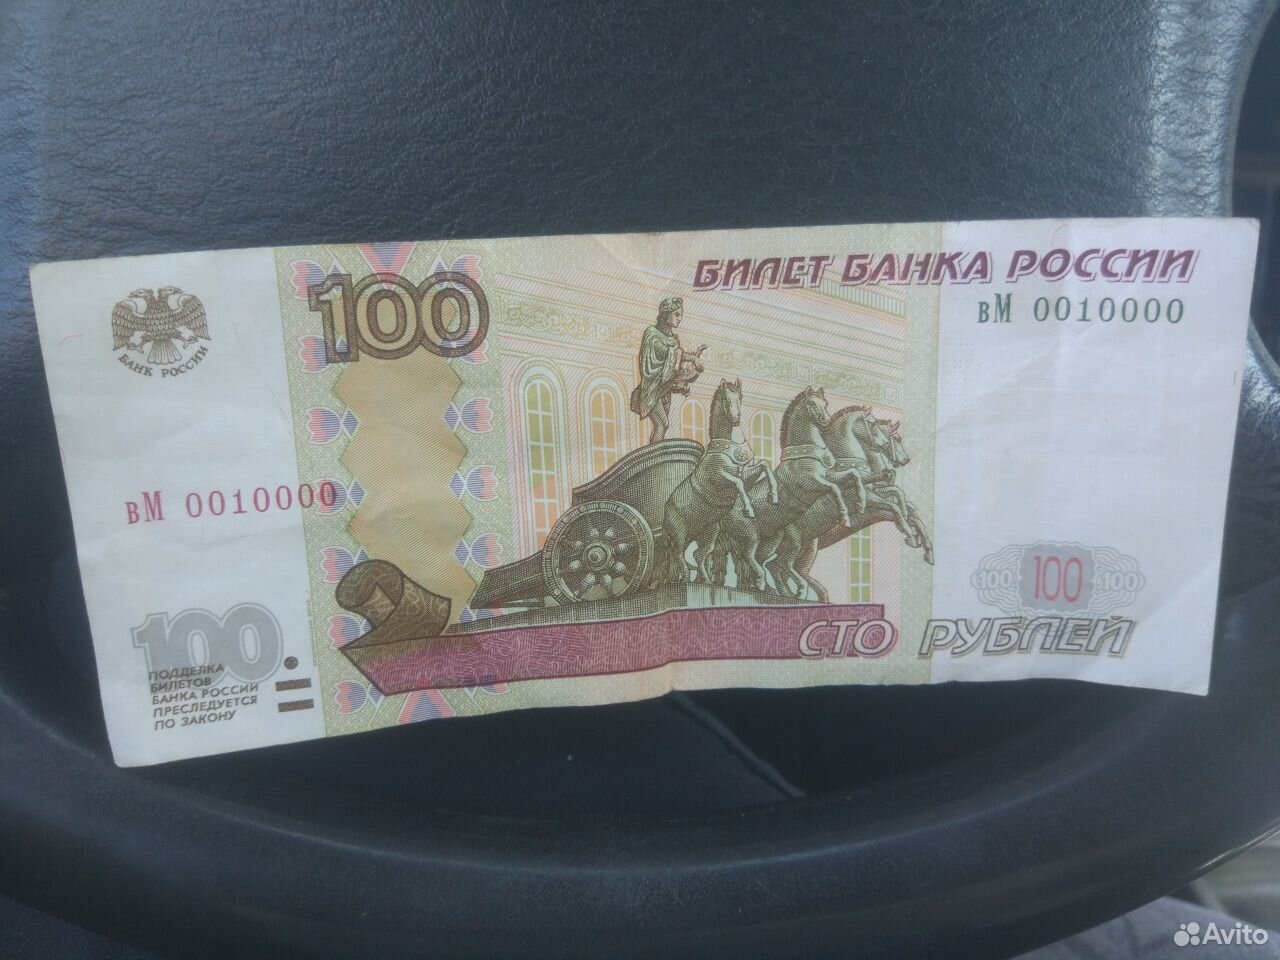 21 500 рублей